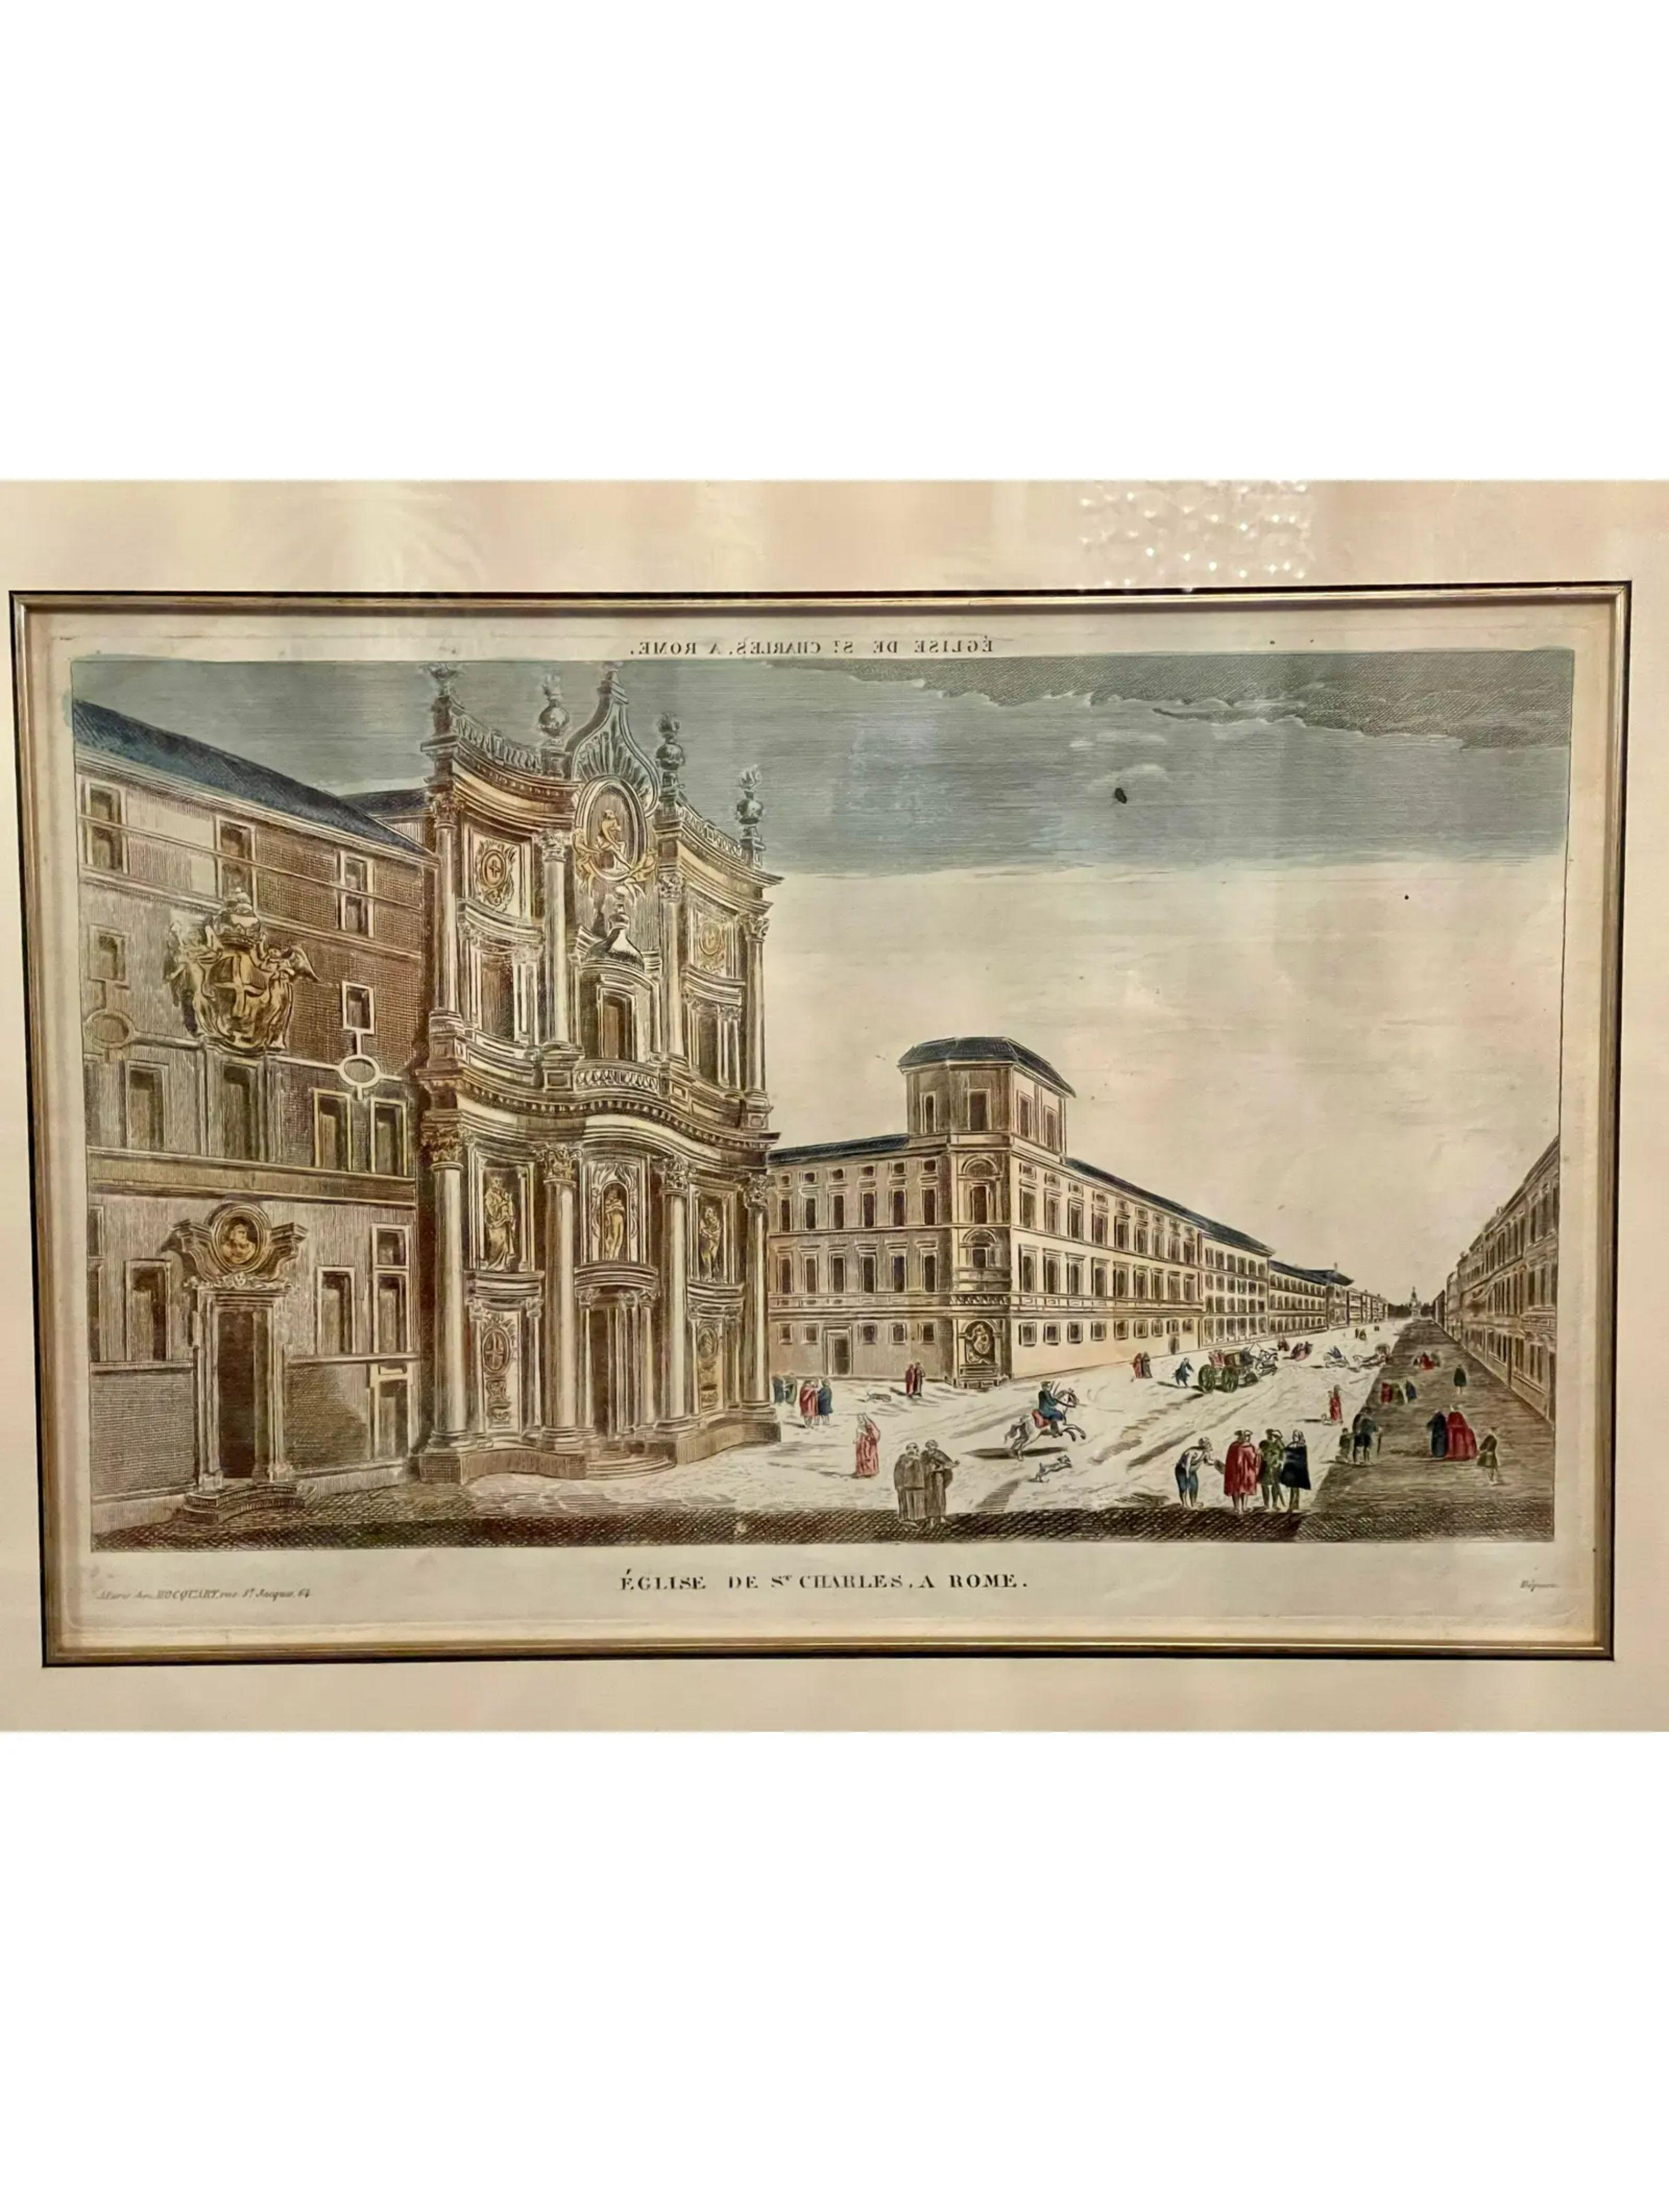 Antique 18th century depose hand colored engraving print - Eglise De St. Charles , A Rome.
A. Paris Chez Hocquart Rue St. Jacques, 64

Plate: 16